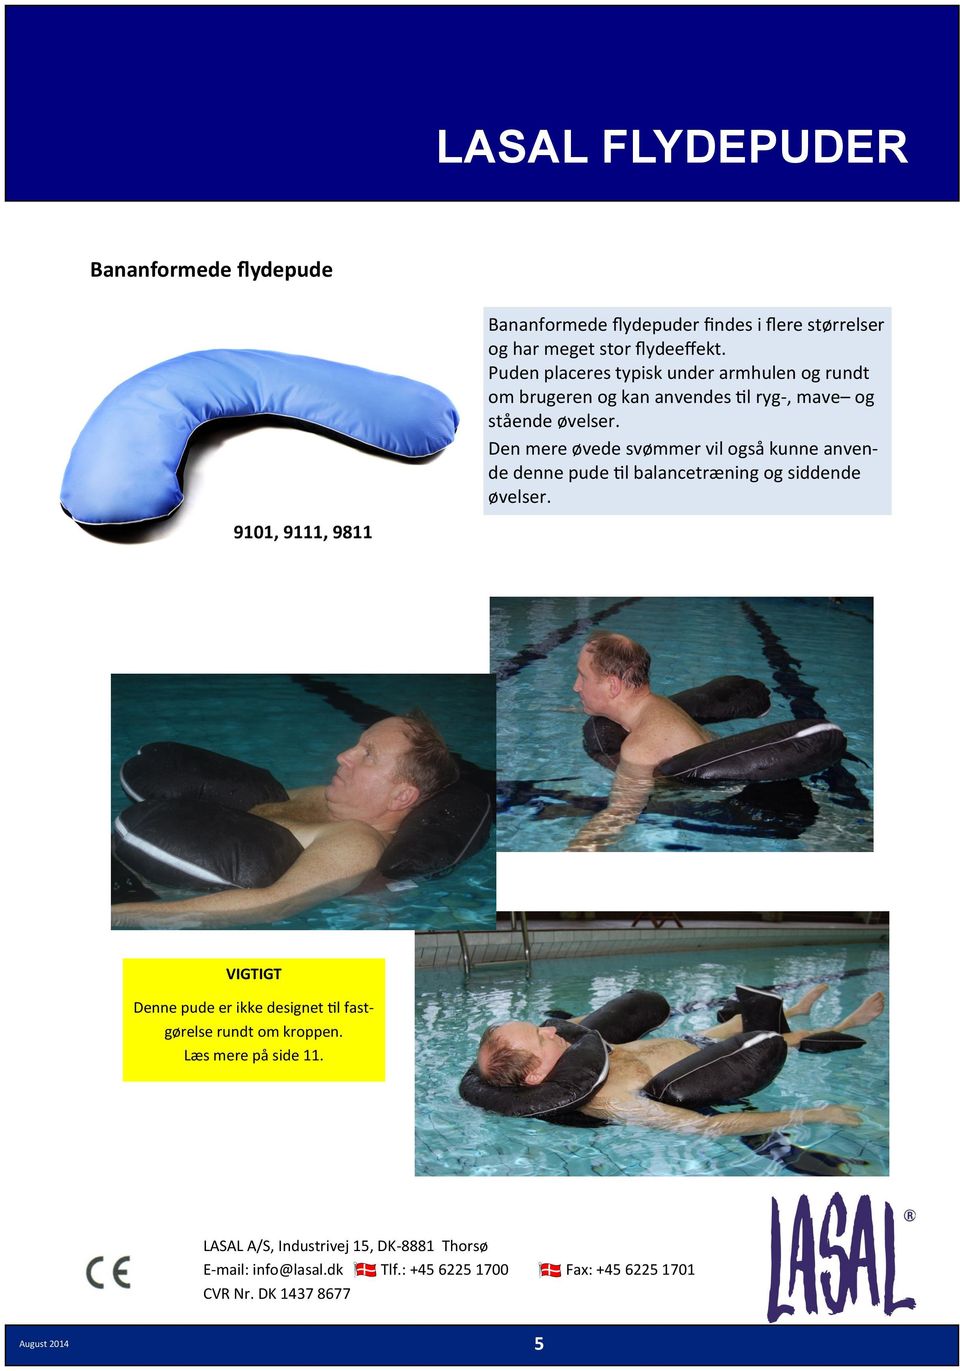 øvelser. Den mere øvede svømmer vil også kunne anvende denne pude til balancetræning og siddende øvelser.